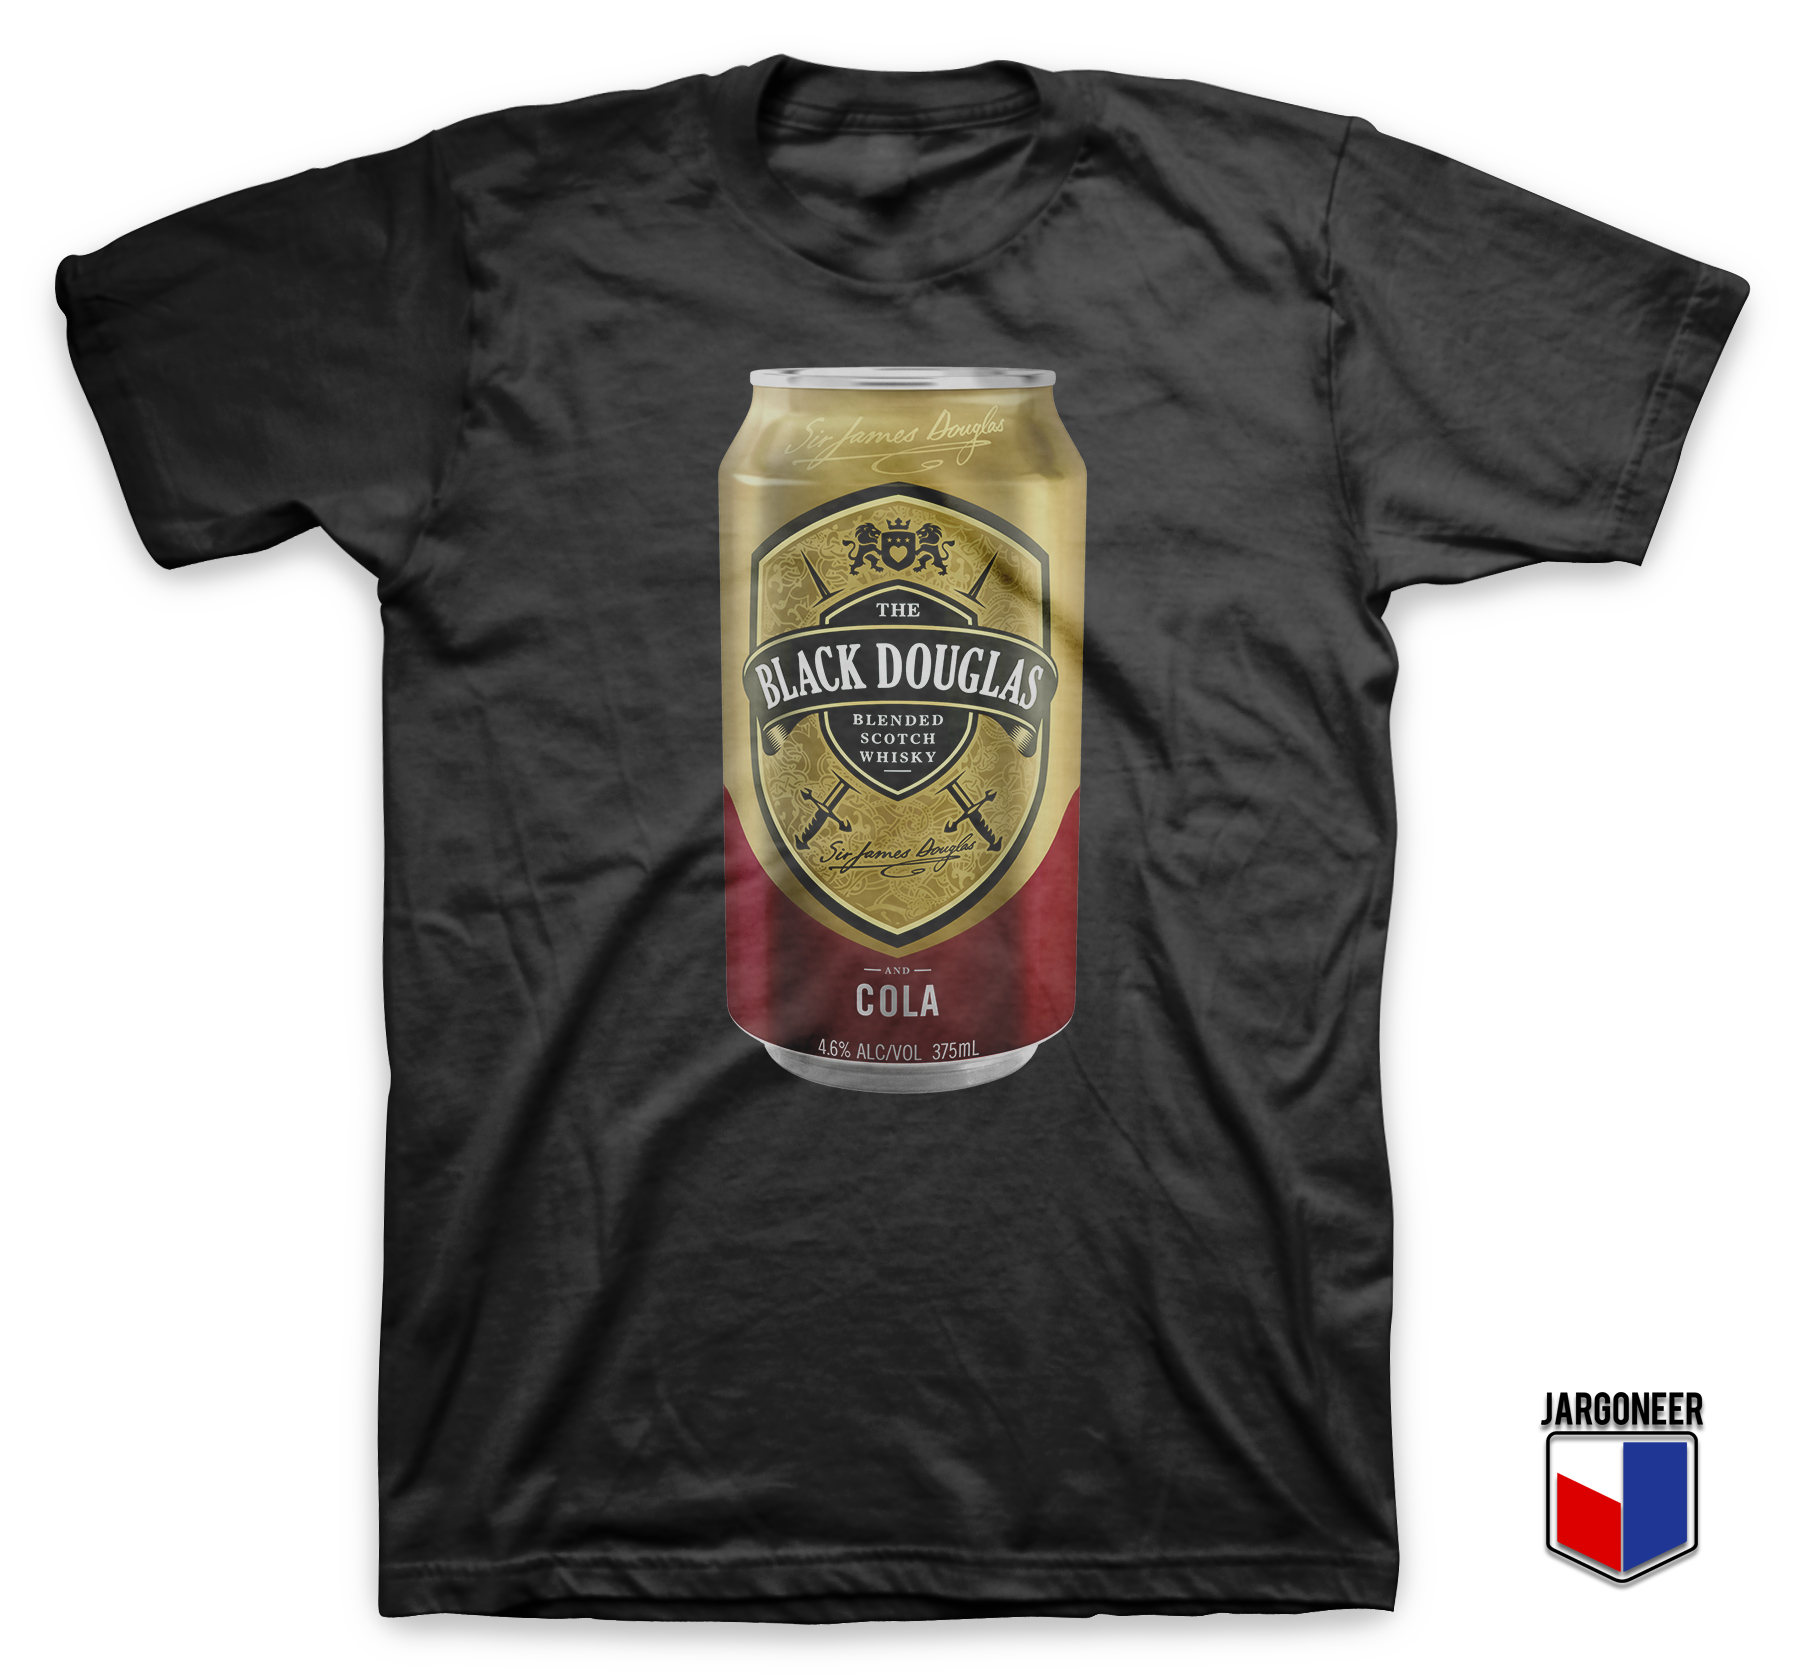 Black Douglas Whisky Cola Tin Black T Shirt - Shop Unique Graphic Cool Shirt Designs